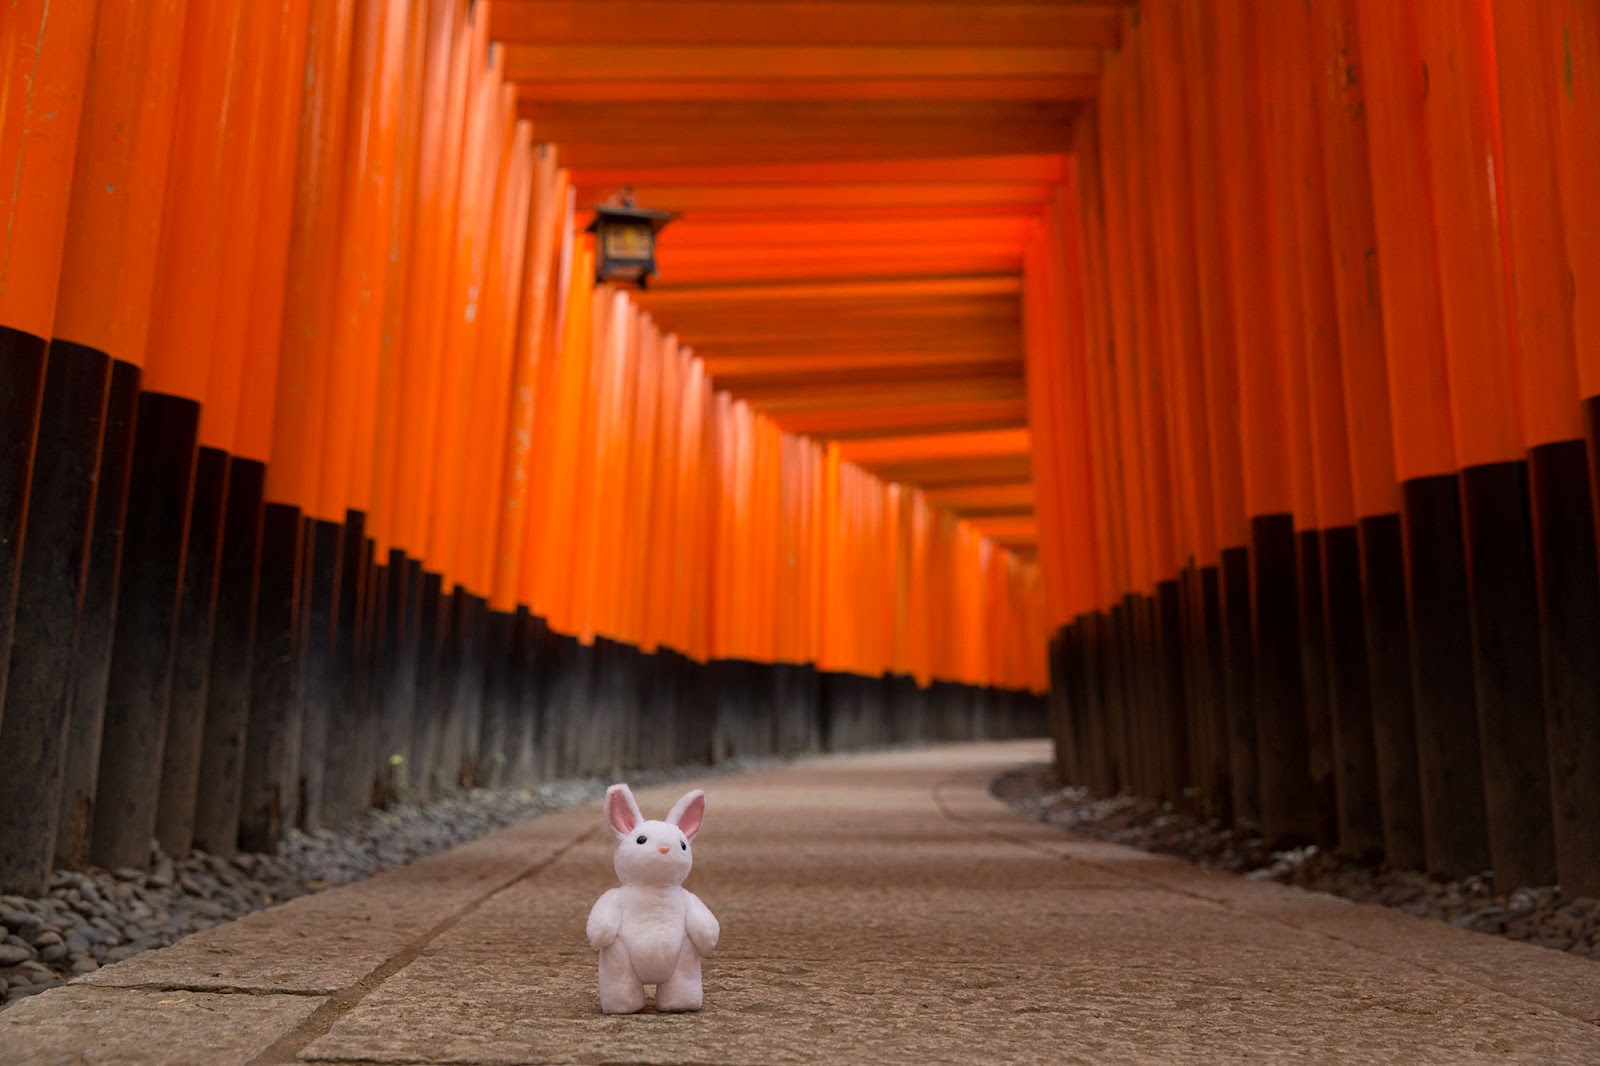 A Peaceful Moment at Fushimi Inari